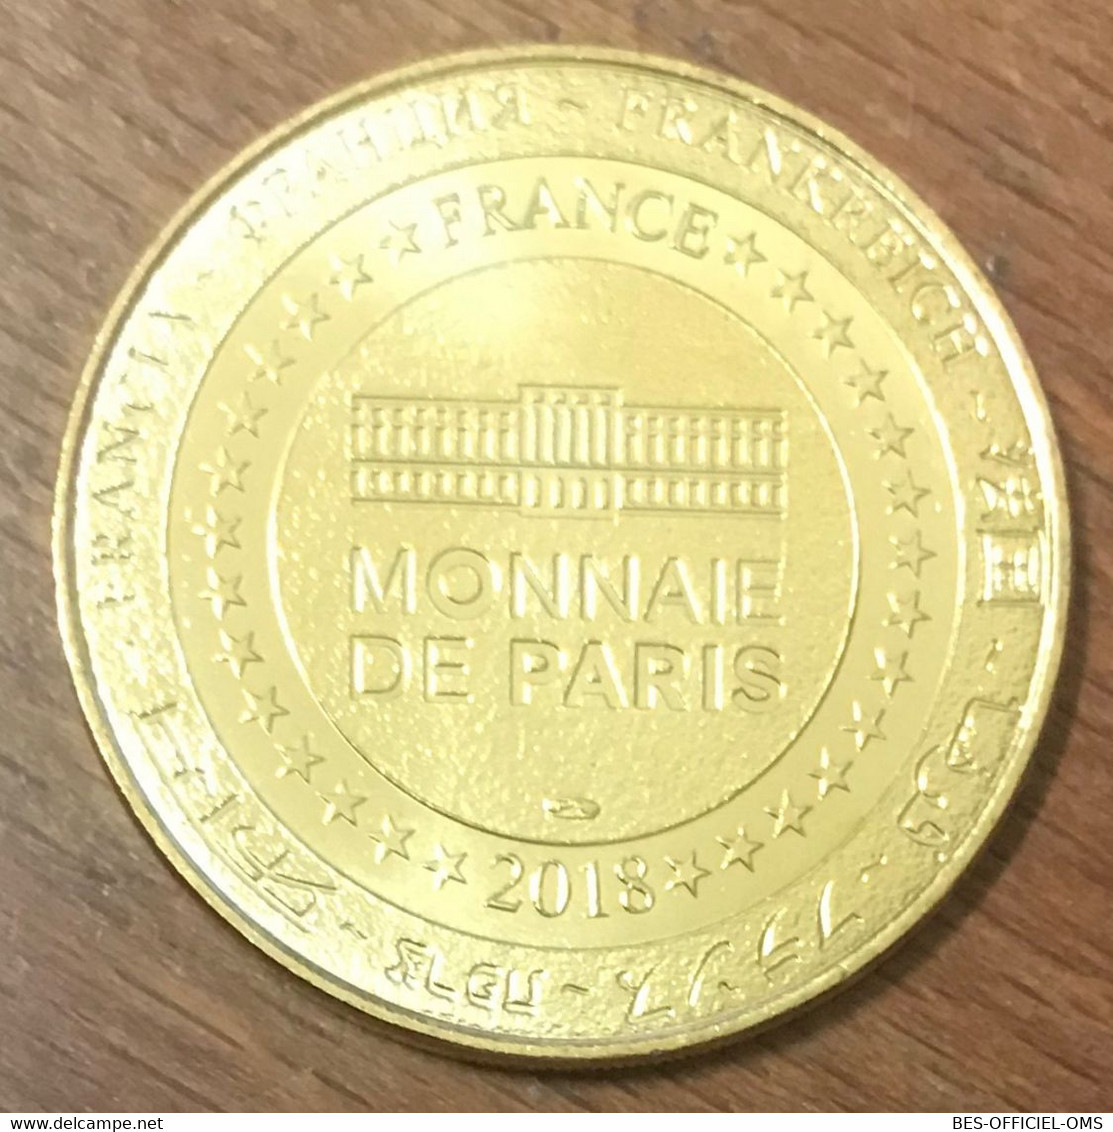 01 VILLARS-LES-DOMBES PARC DES OISEAUX SAGITTAIRE MDP 2018 MÉDAILLE MONNAIE DE PARIS JETON TOKENS MEDALS COINS - 2018